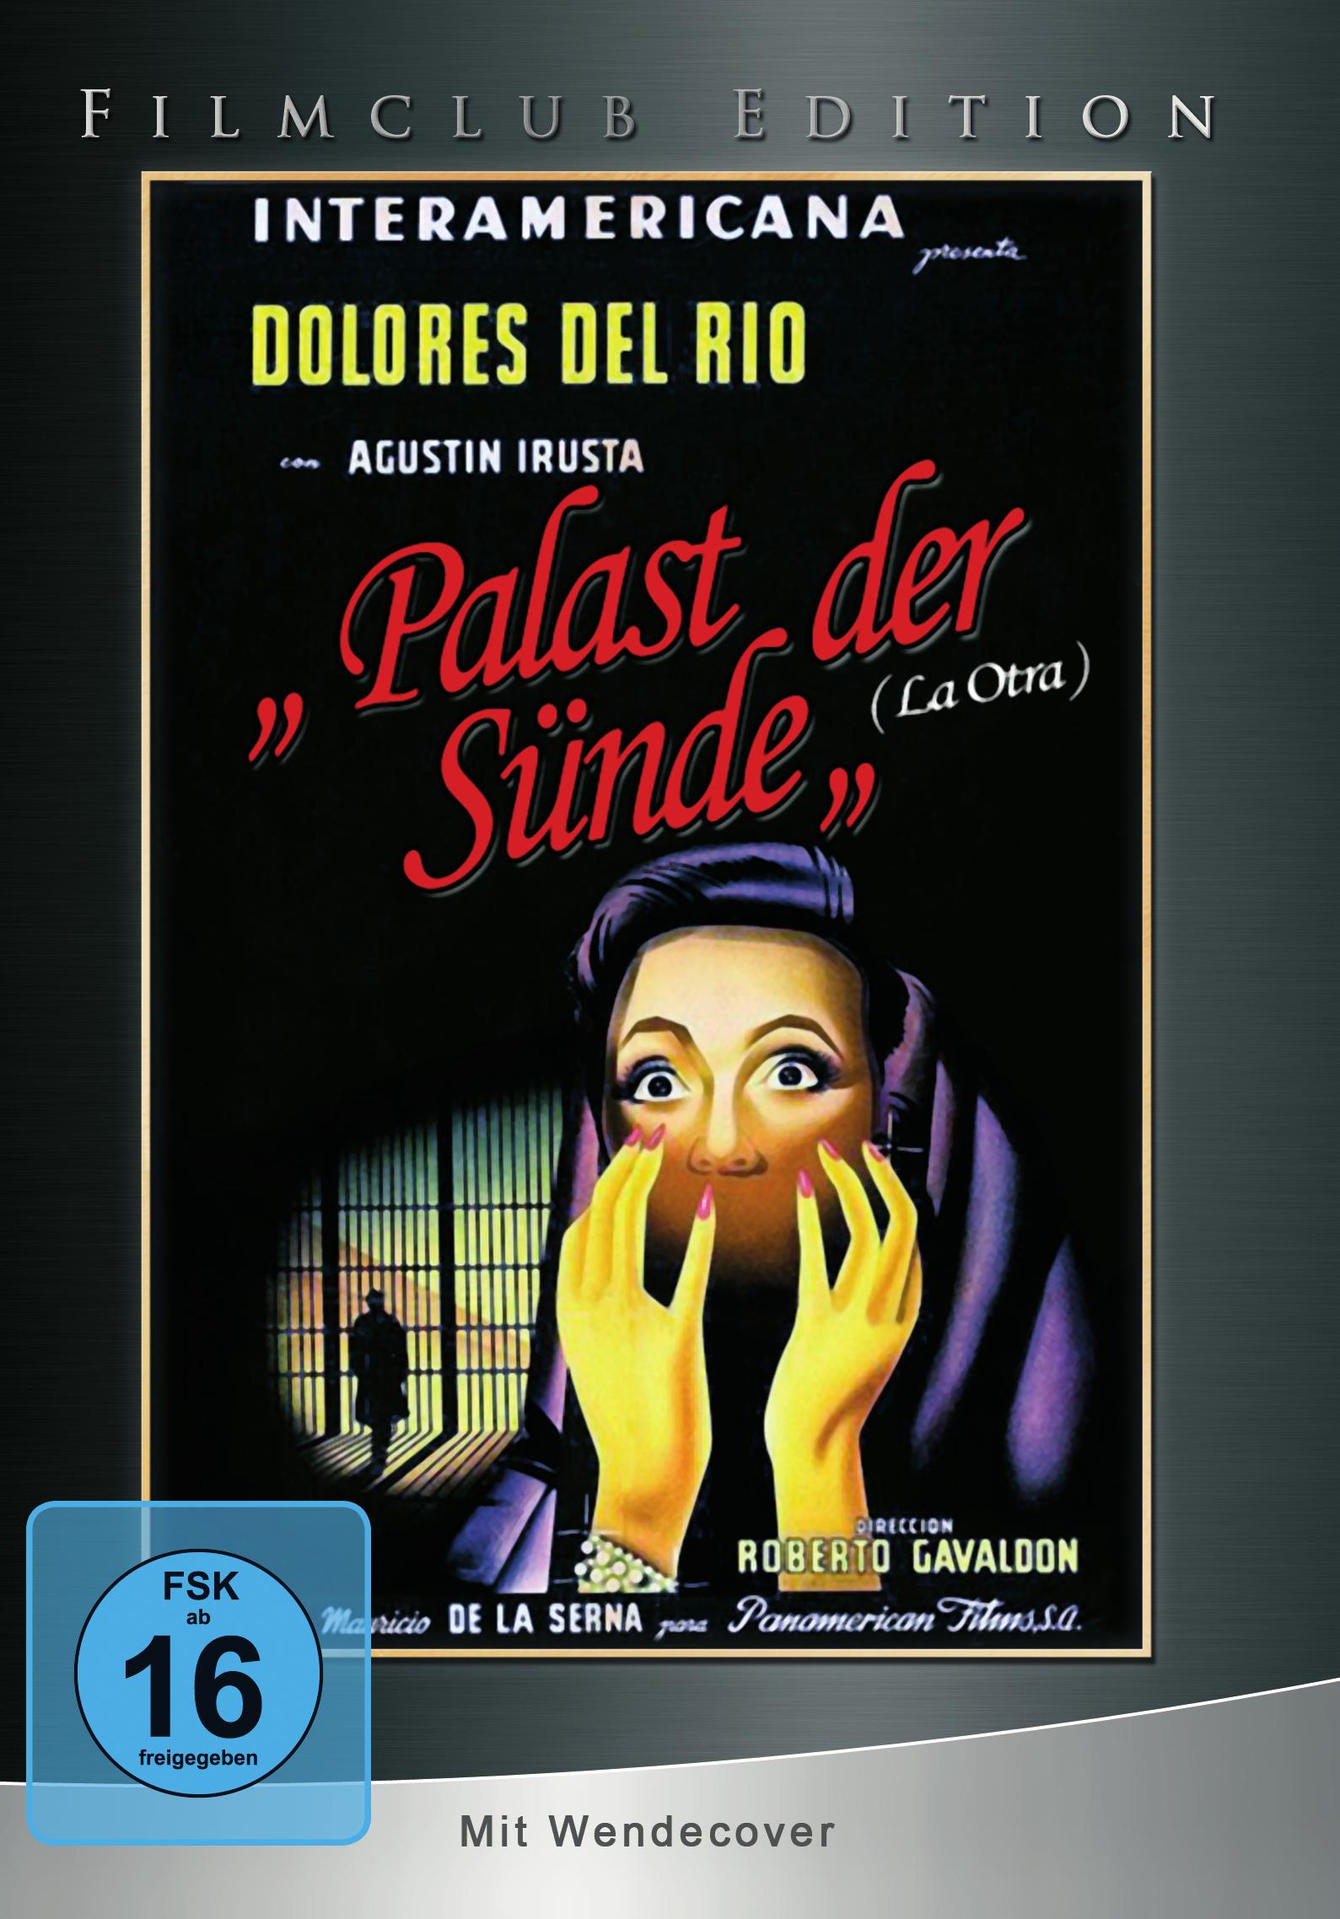 Die Weib DVD Andere Sünde der Dämon Palast / /